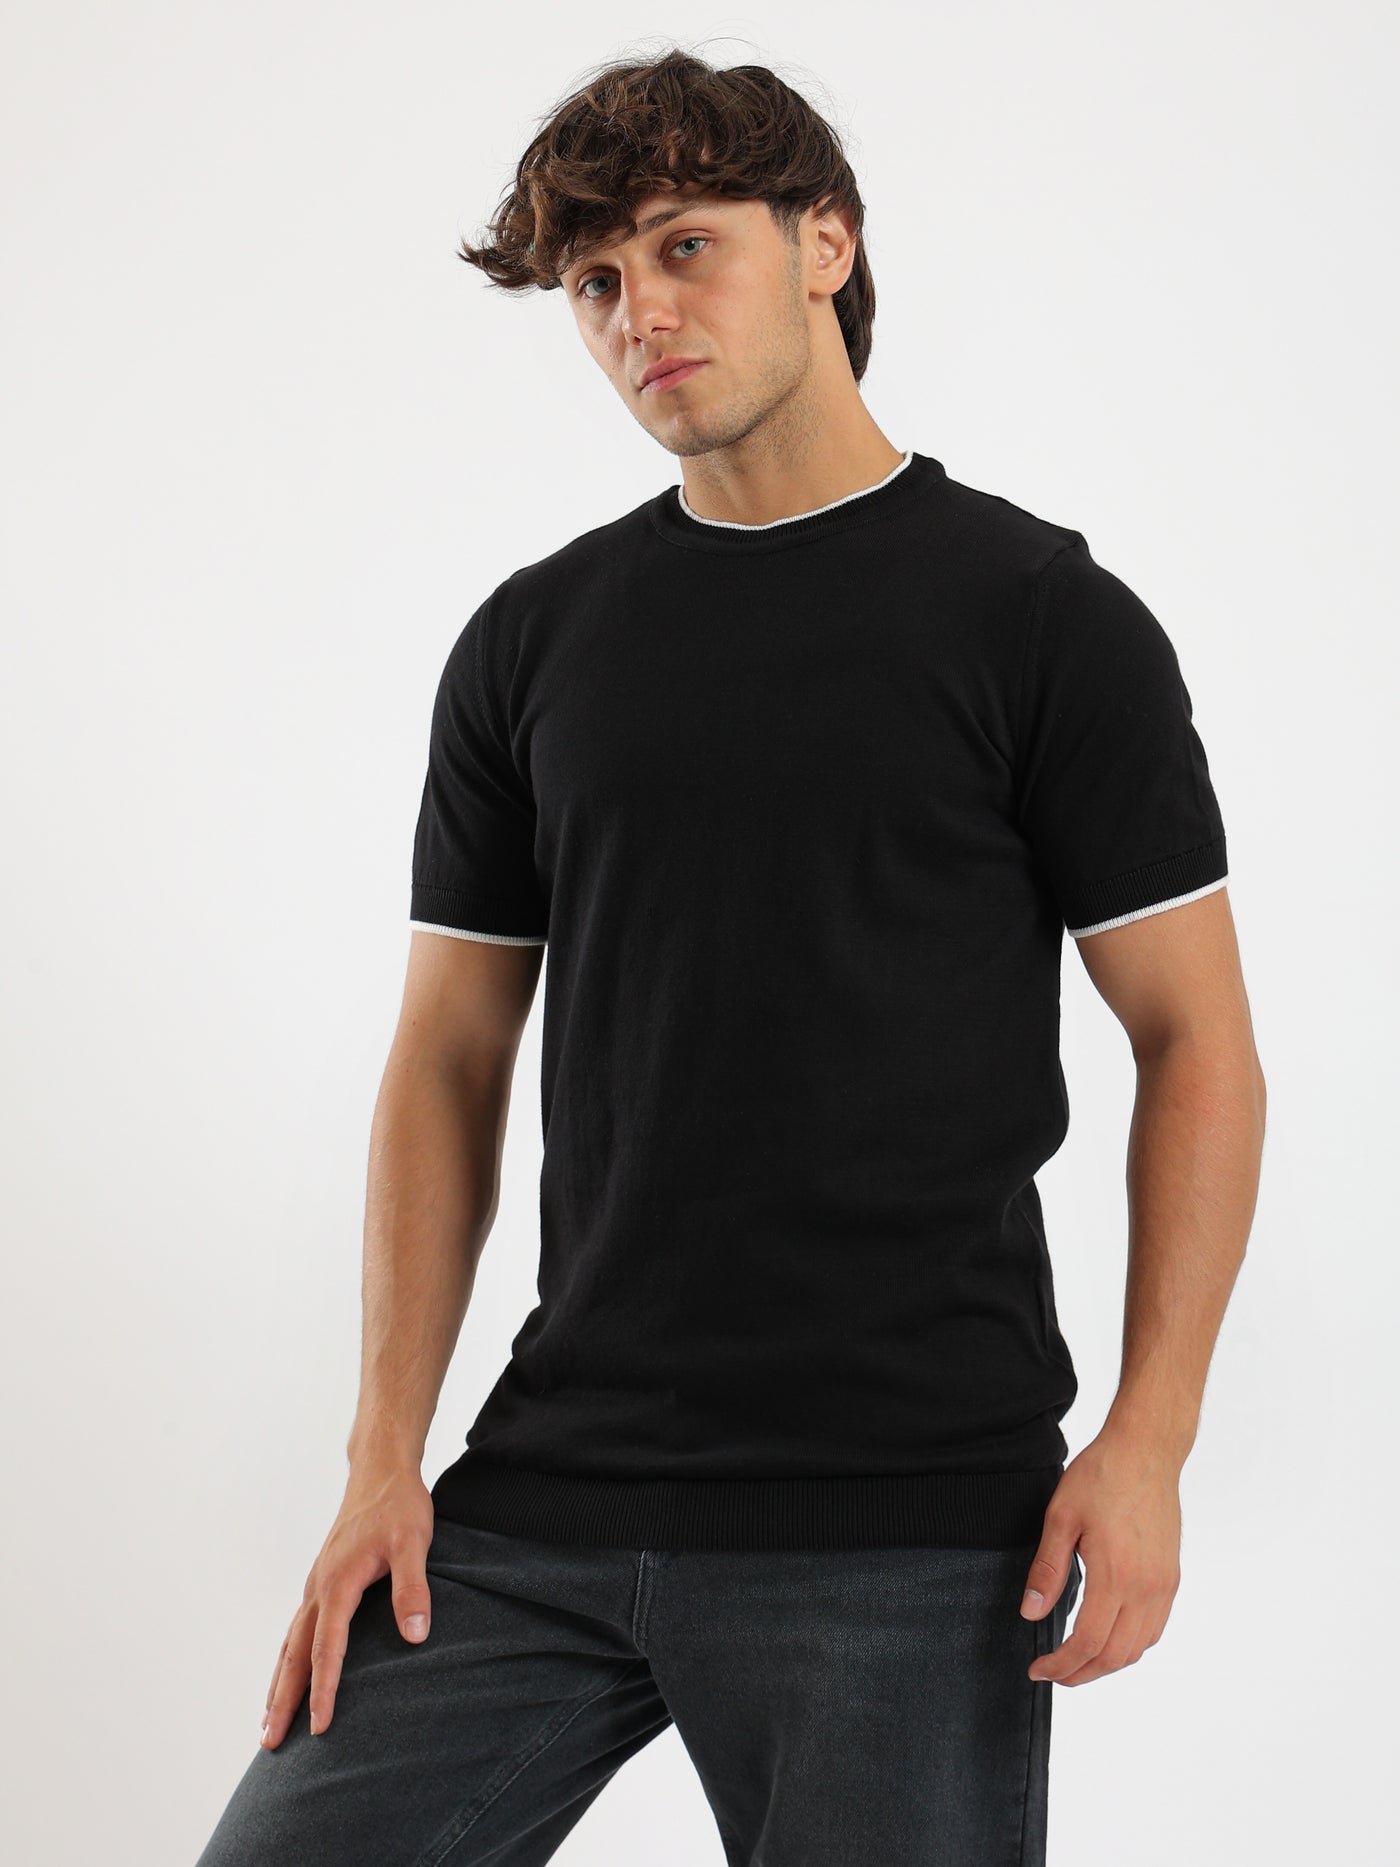 T-Shirt - Half Sleeves - Round Neck